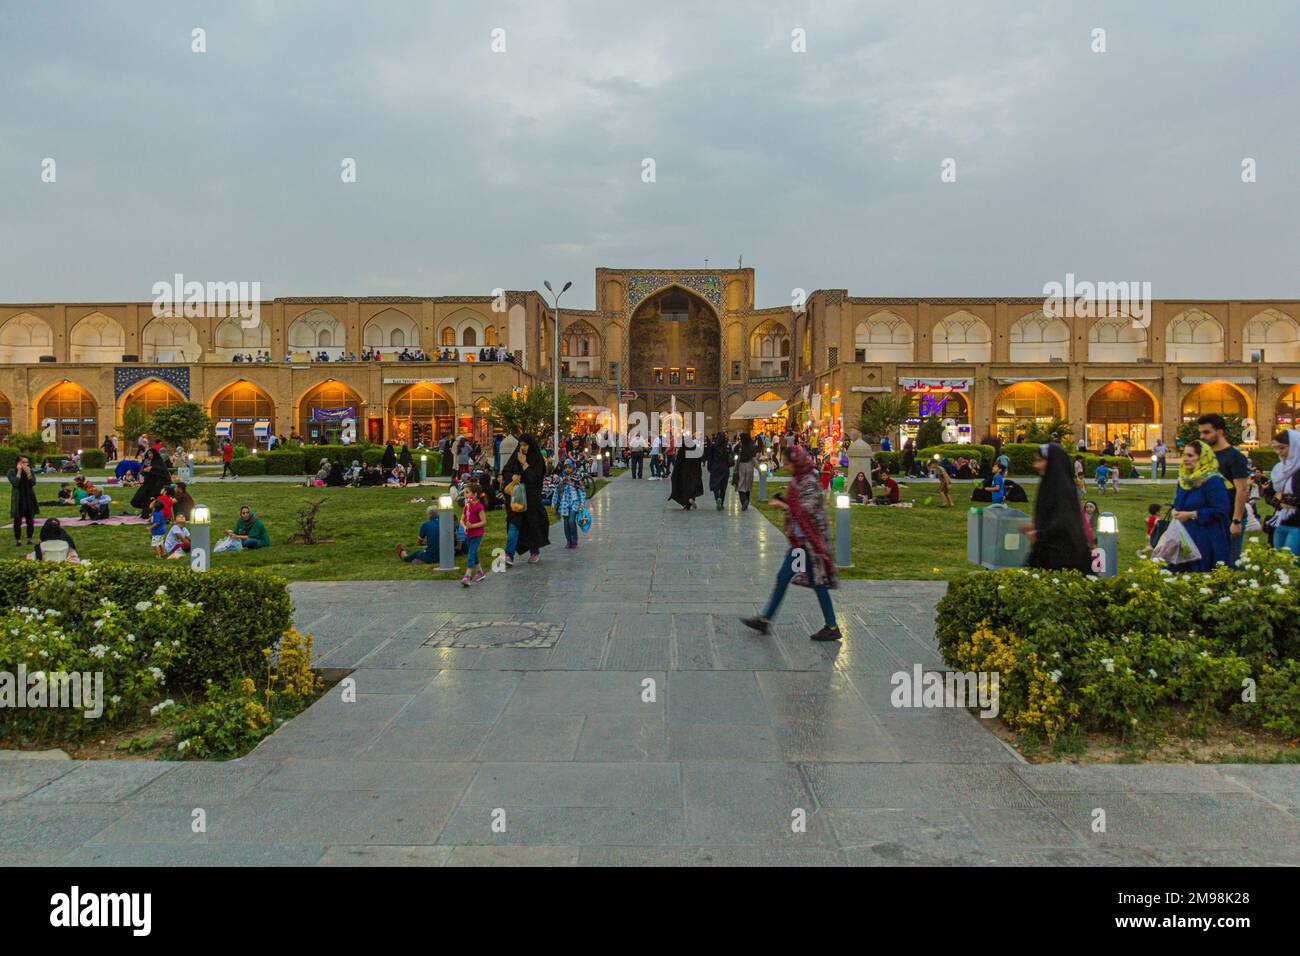 ISFAHAN, IRAN - JULY 10, 2019: People enjoying evening at Naqsh-e Jahan Square in Isfahan, Iran Stock Photo